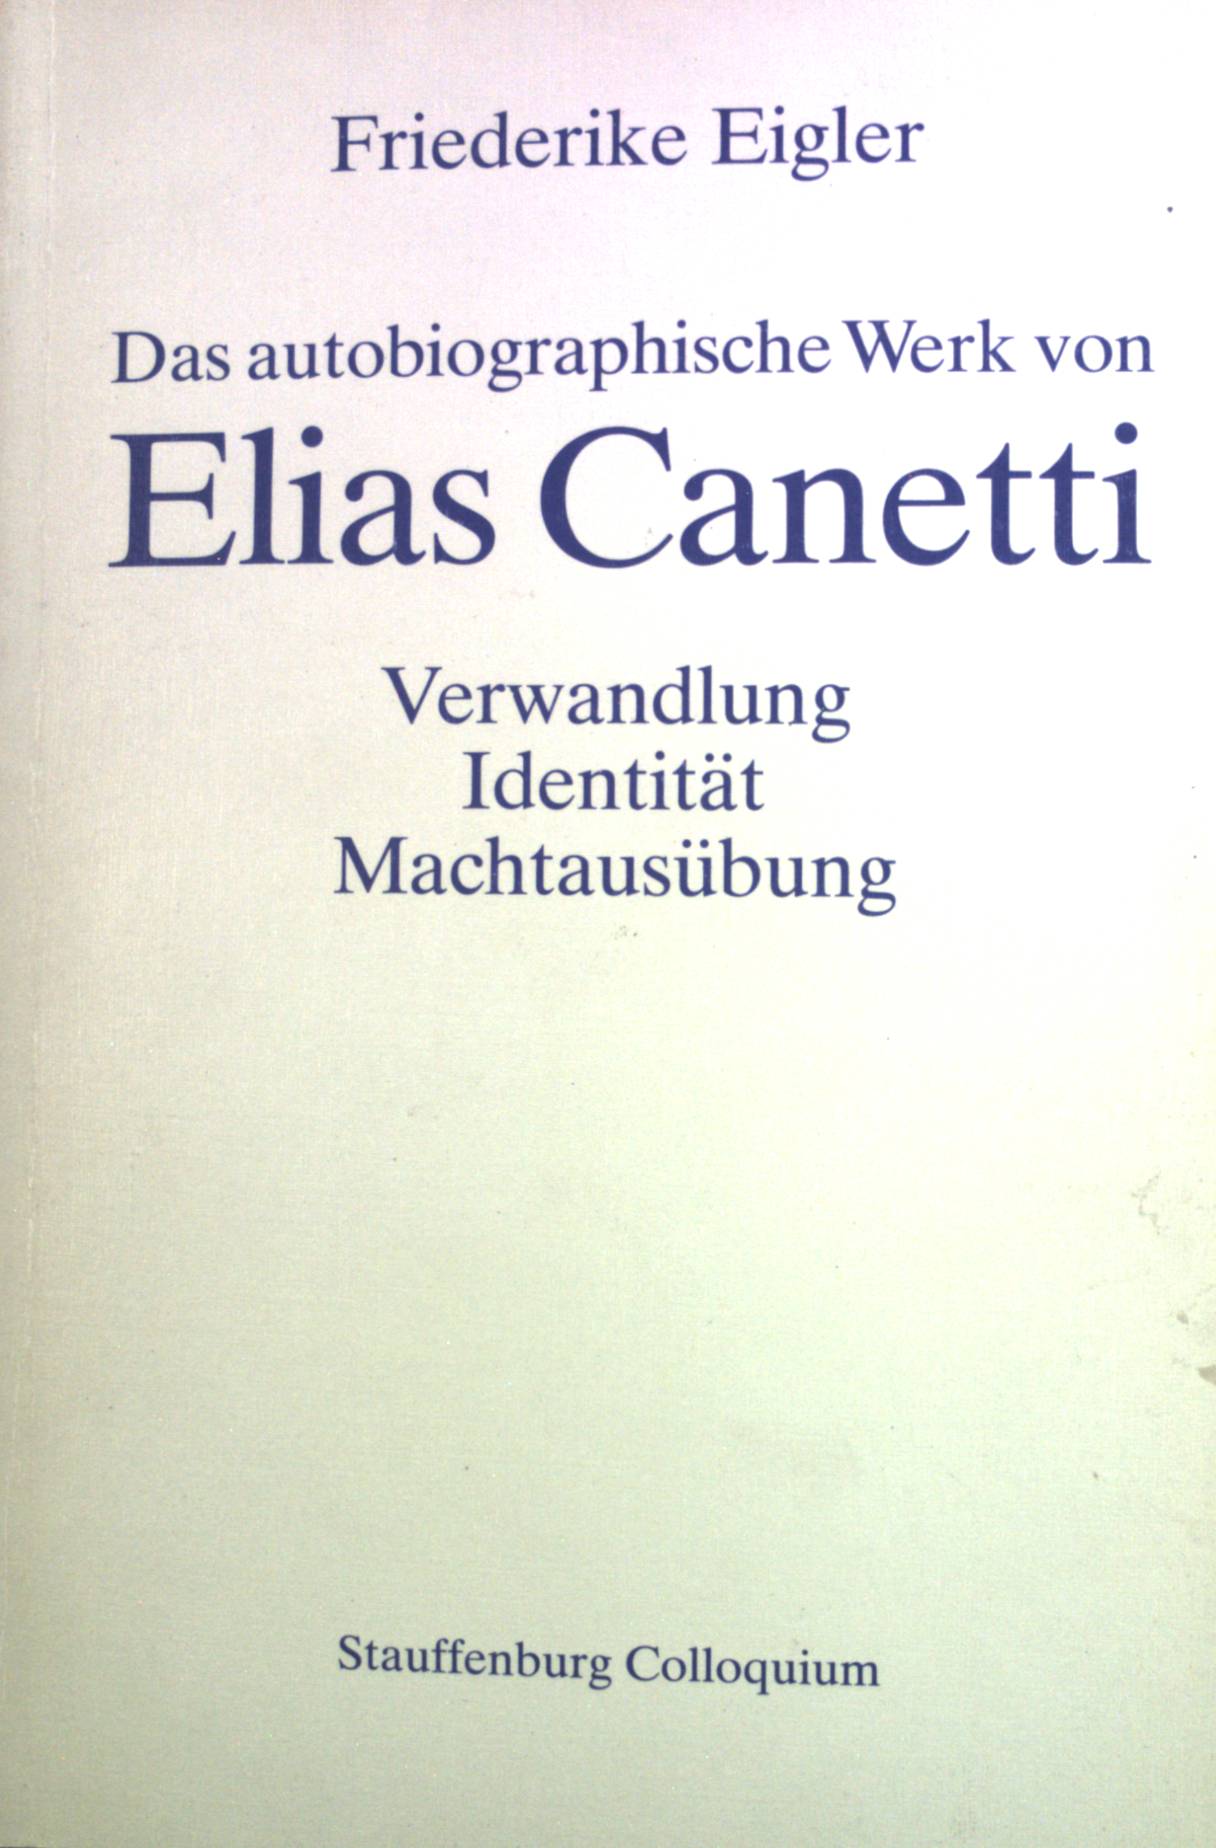 Das autobiographische Werk von Elias Canetti : Verwandlung, Identität, Machtausübung. Stauffenburg-Colloquium ; Bd. 7 - Eigler, Friederike